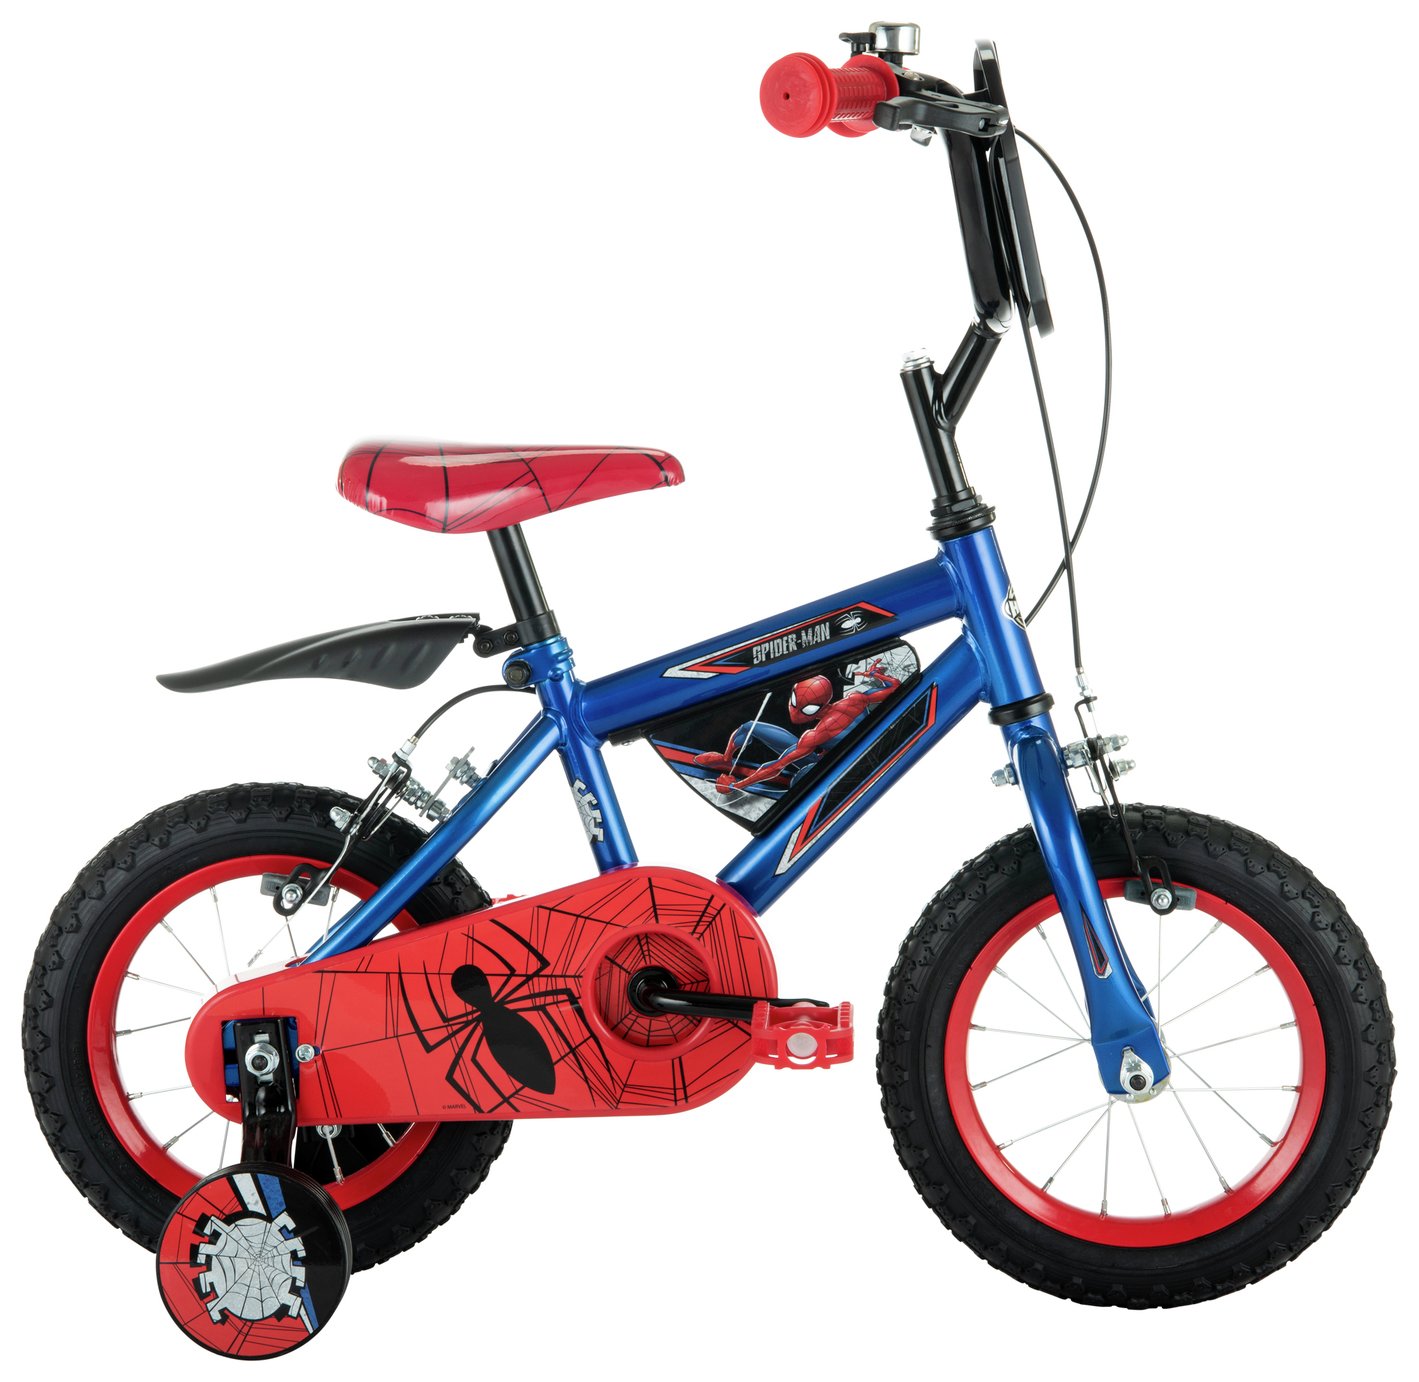 Disney Marvel Spider-Man 12 inch Wheel Size Kids Bike - Red